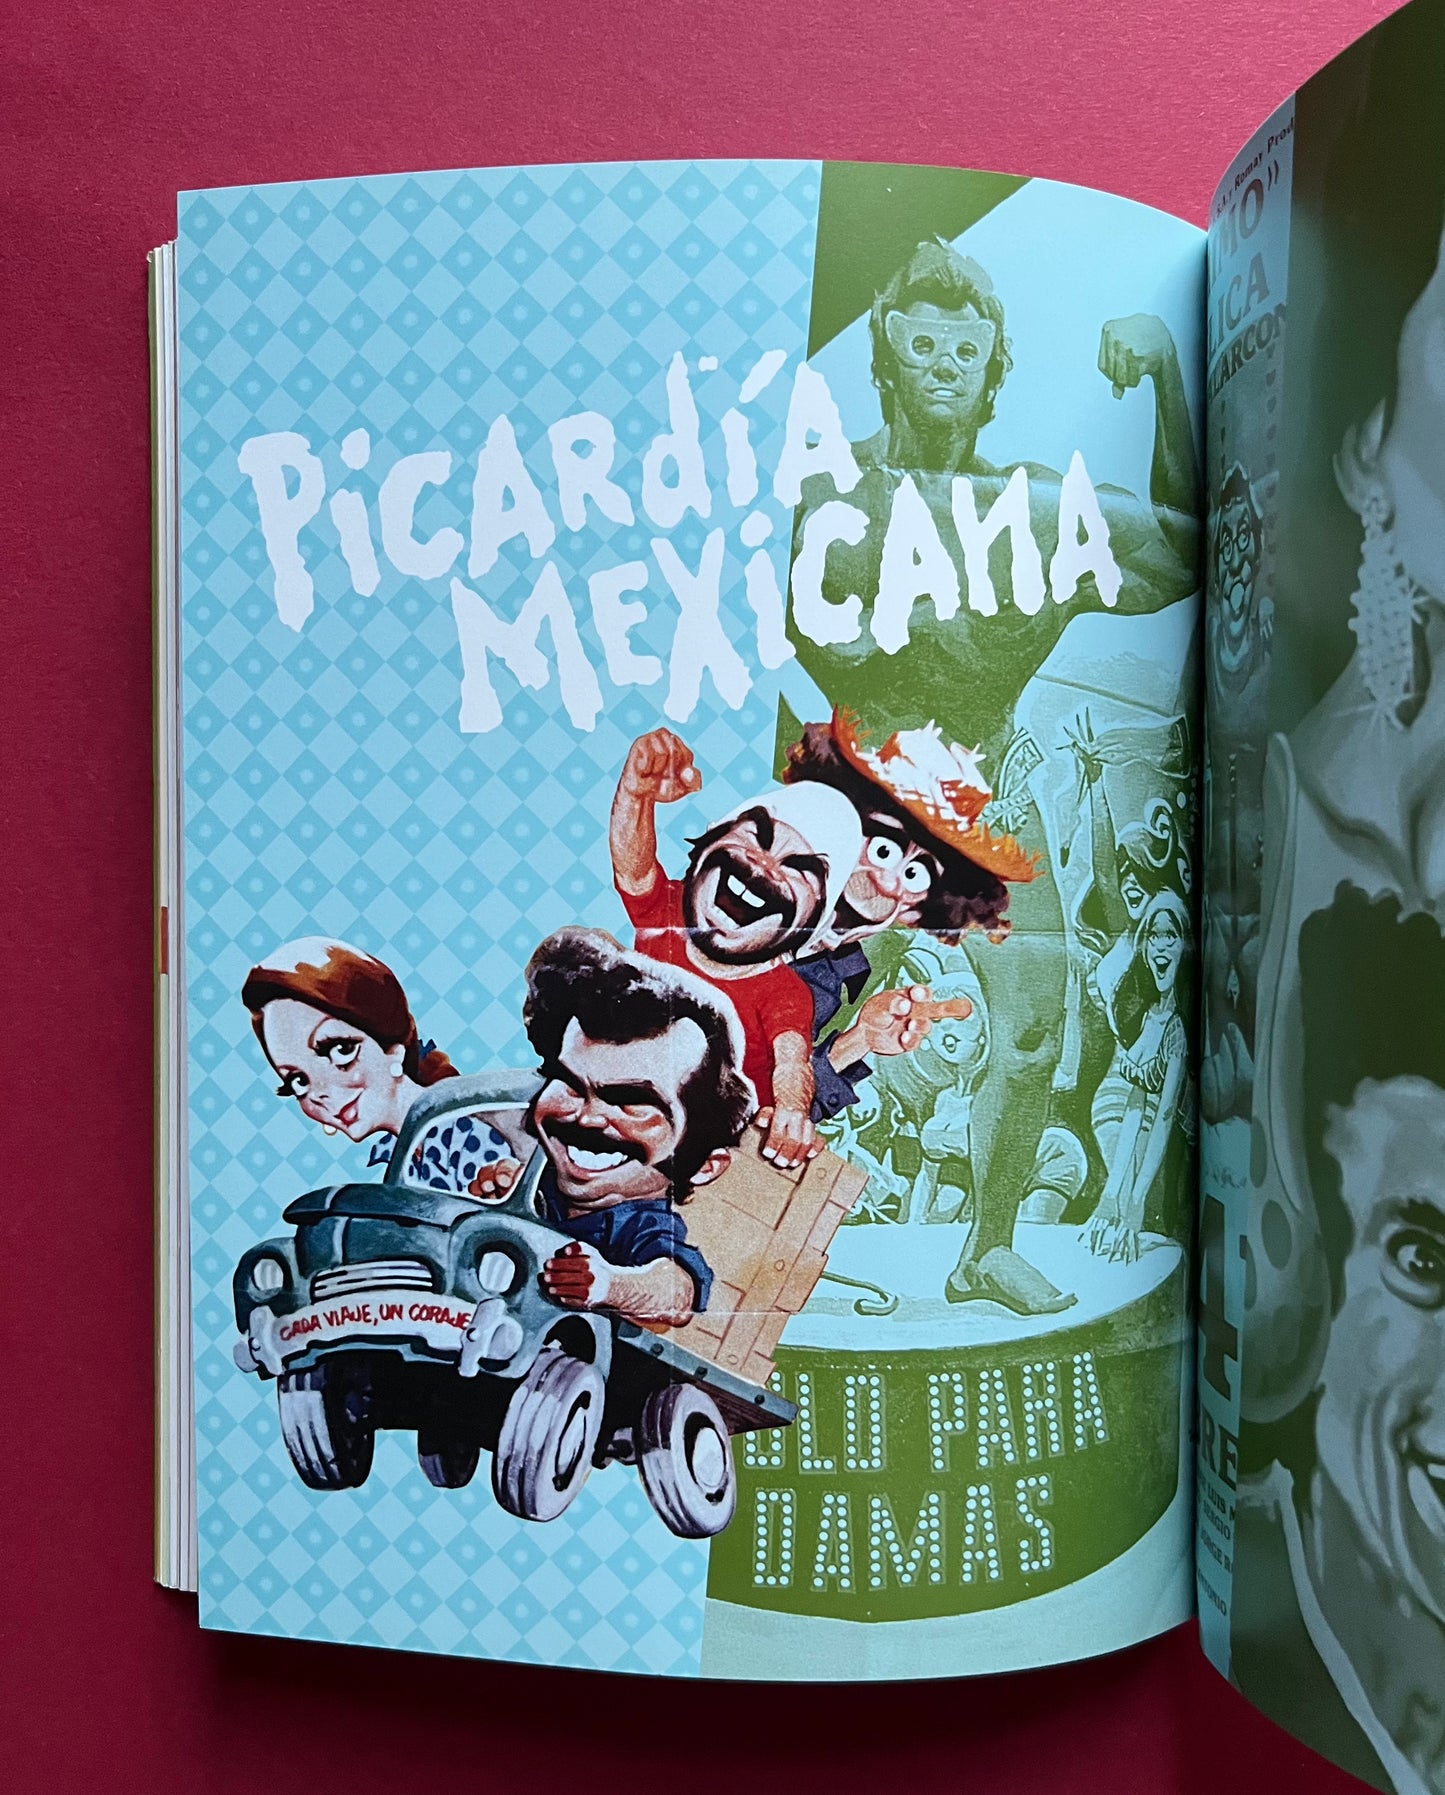 ¡Más! Cine Mexicano: Carteles sensacionales del cine mexicano 1957-1990